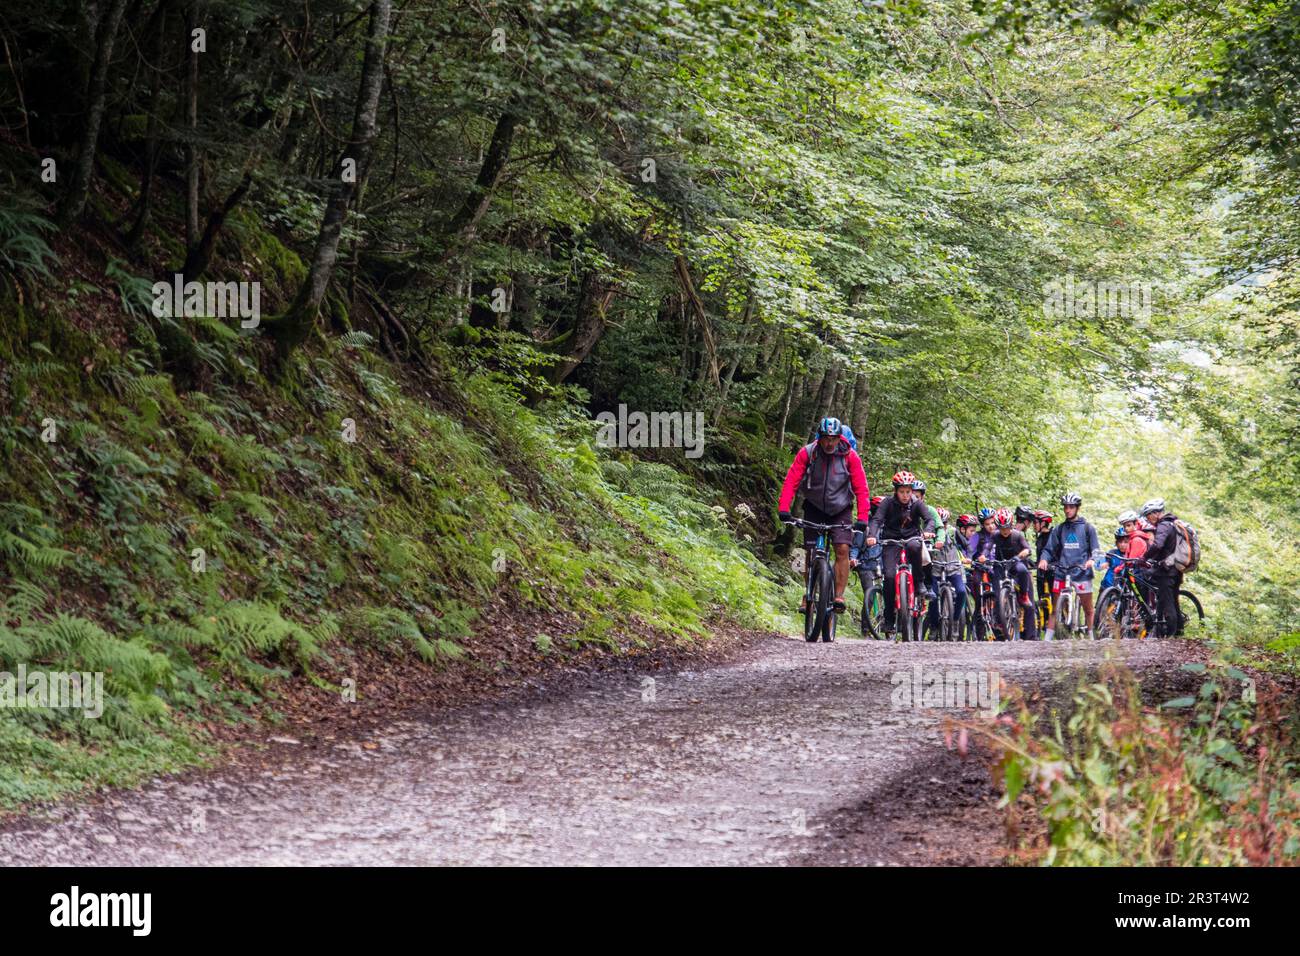 escursion juvenil en bicicleta de montaña, pista de Anapia a prados de Sanchese, trekking de las Golondrinas, Lescun, región de Aquitania, departamento de Pirineos Atlánticos, Francia. Stock Photo